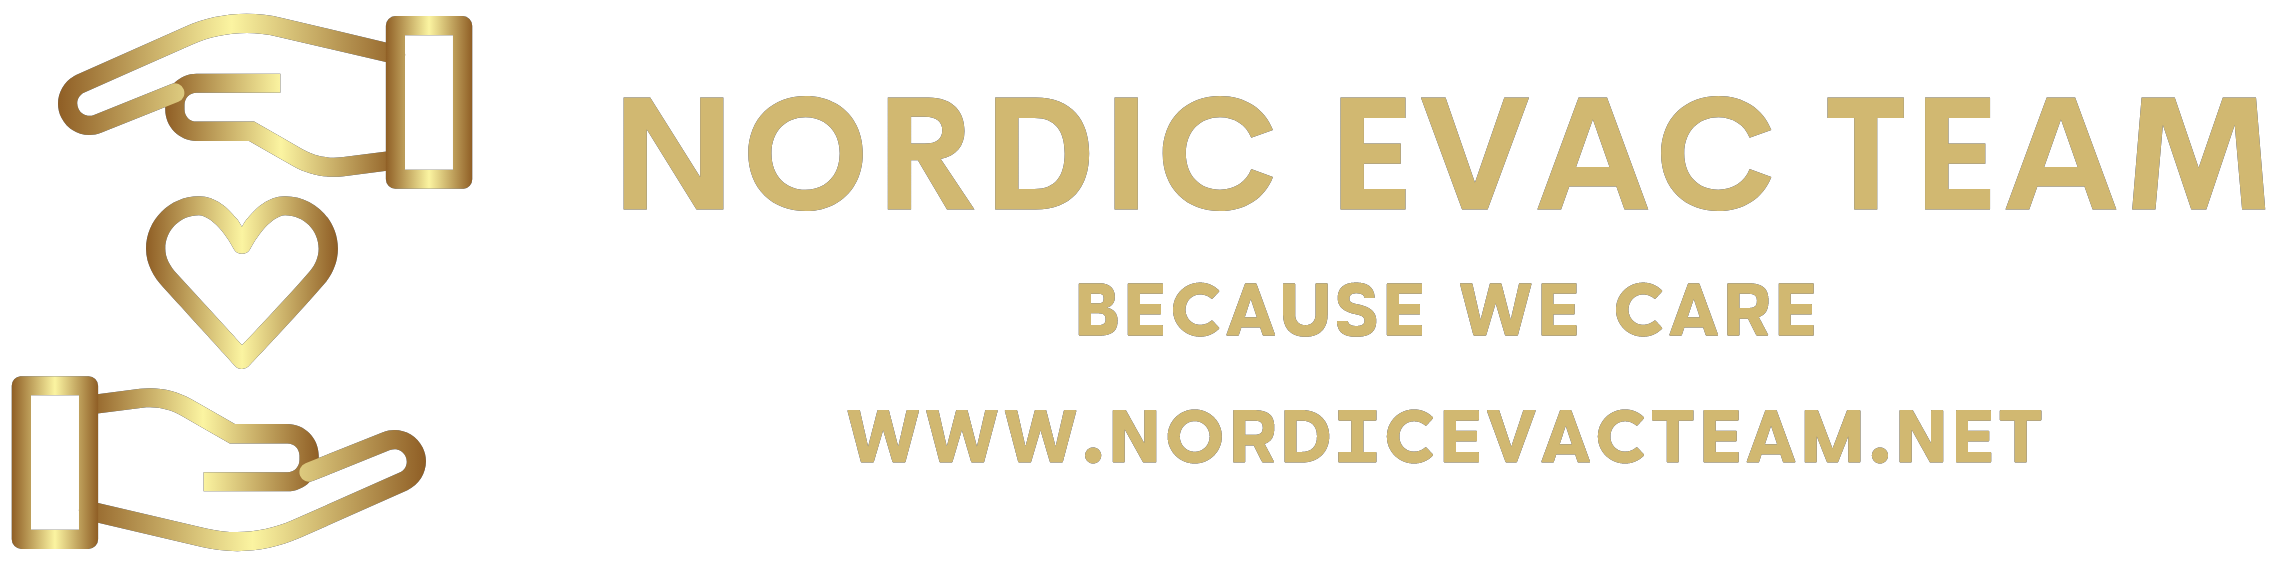 Nordic Evac Team